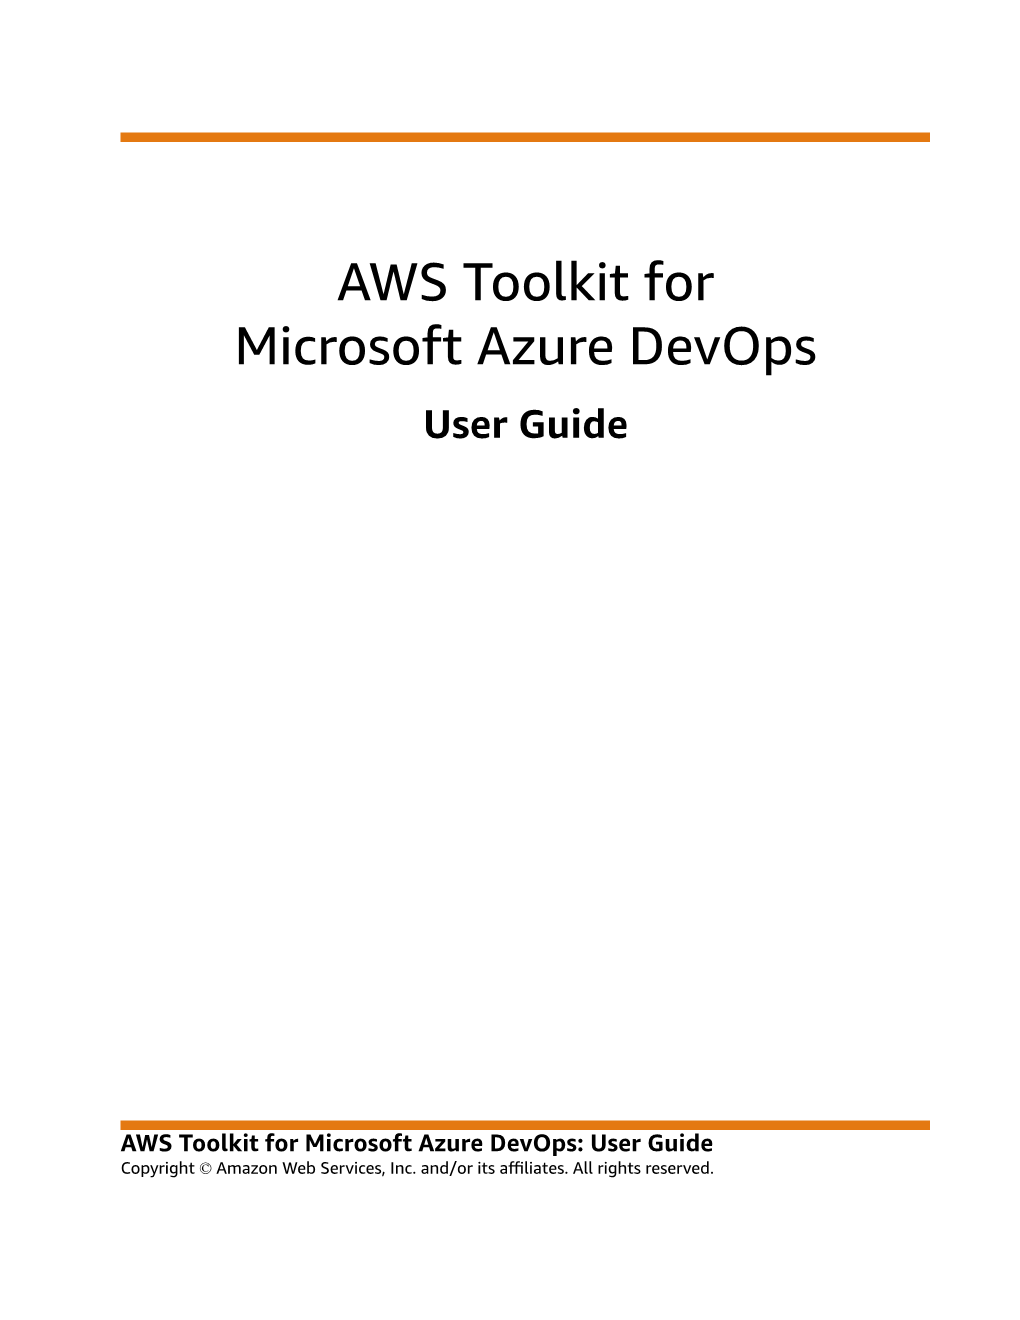 AWS Toolkit for Microsoft Azure Devops User Guide